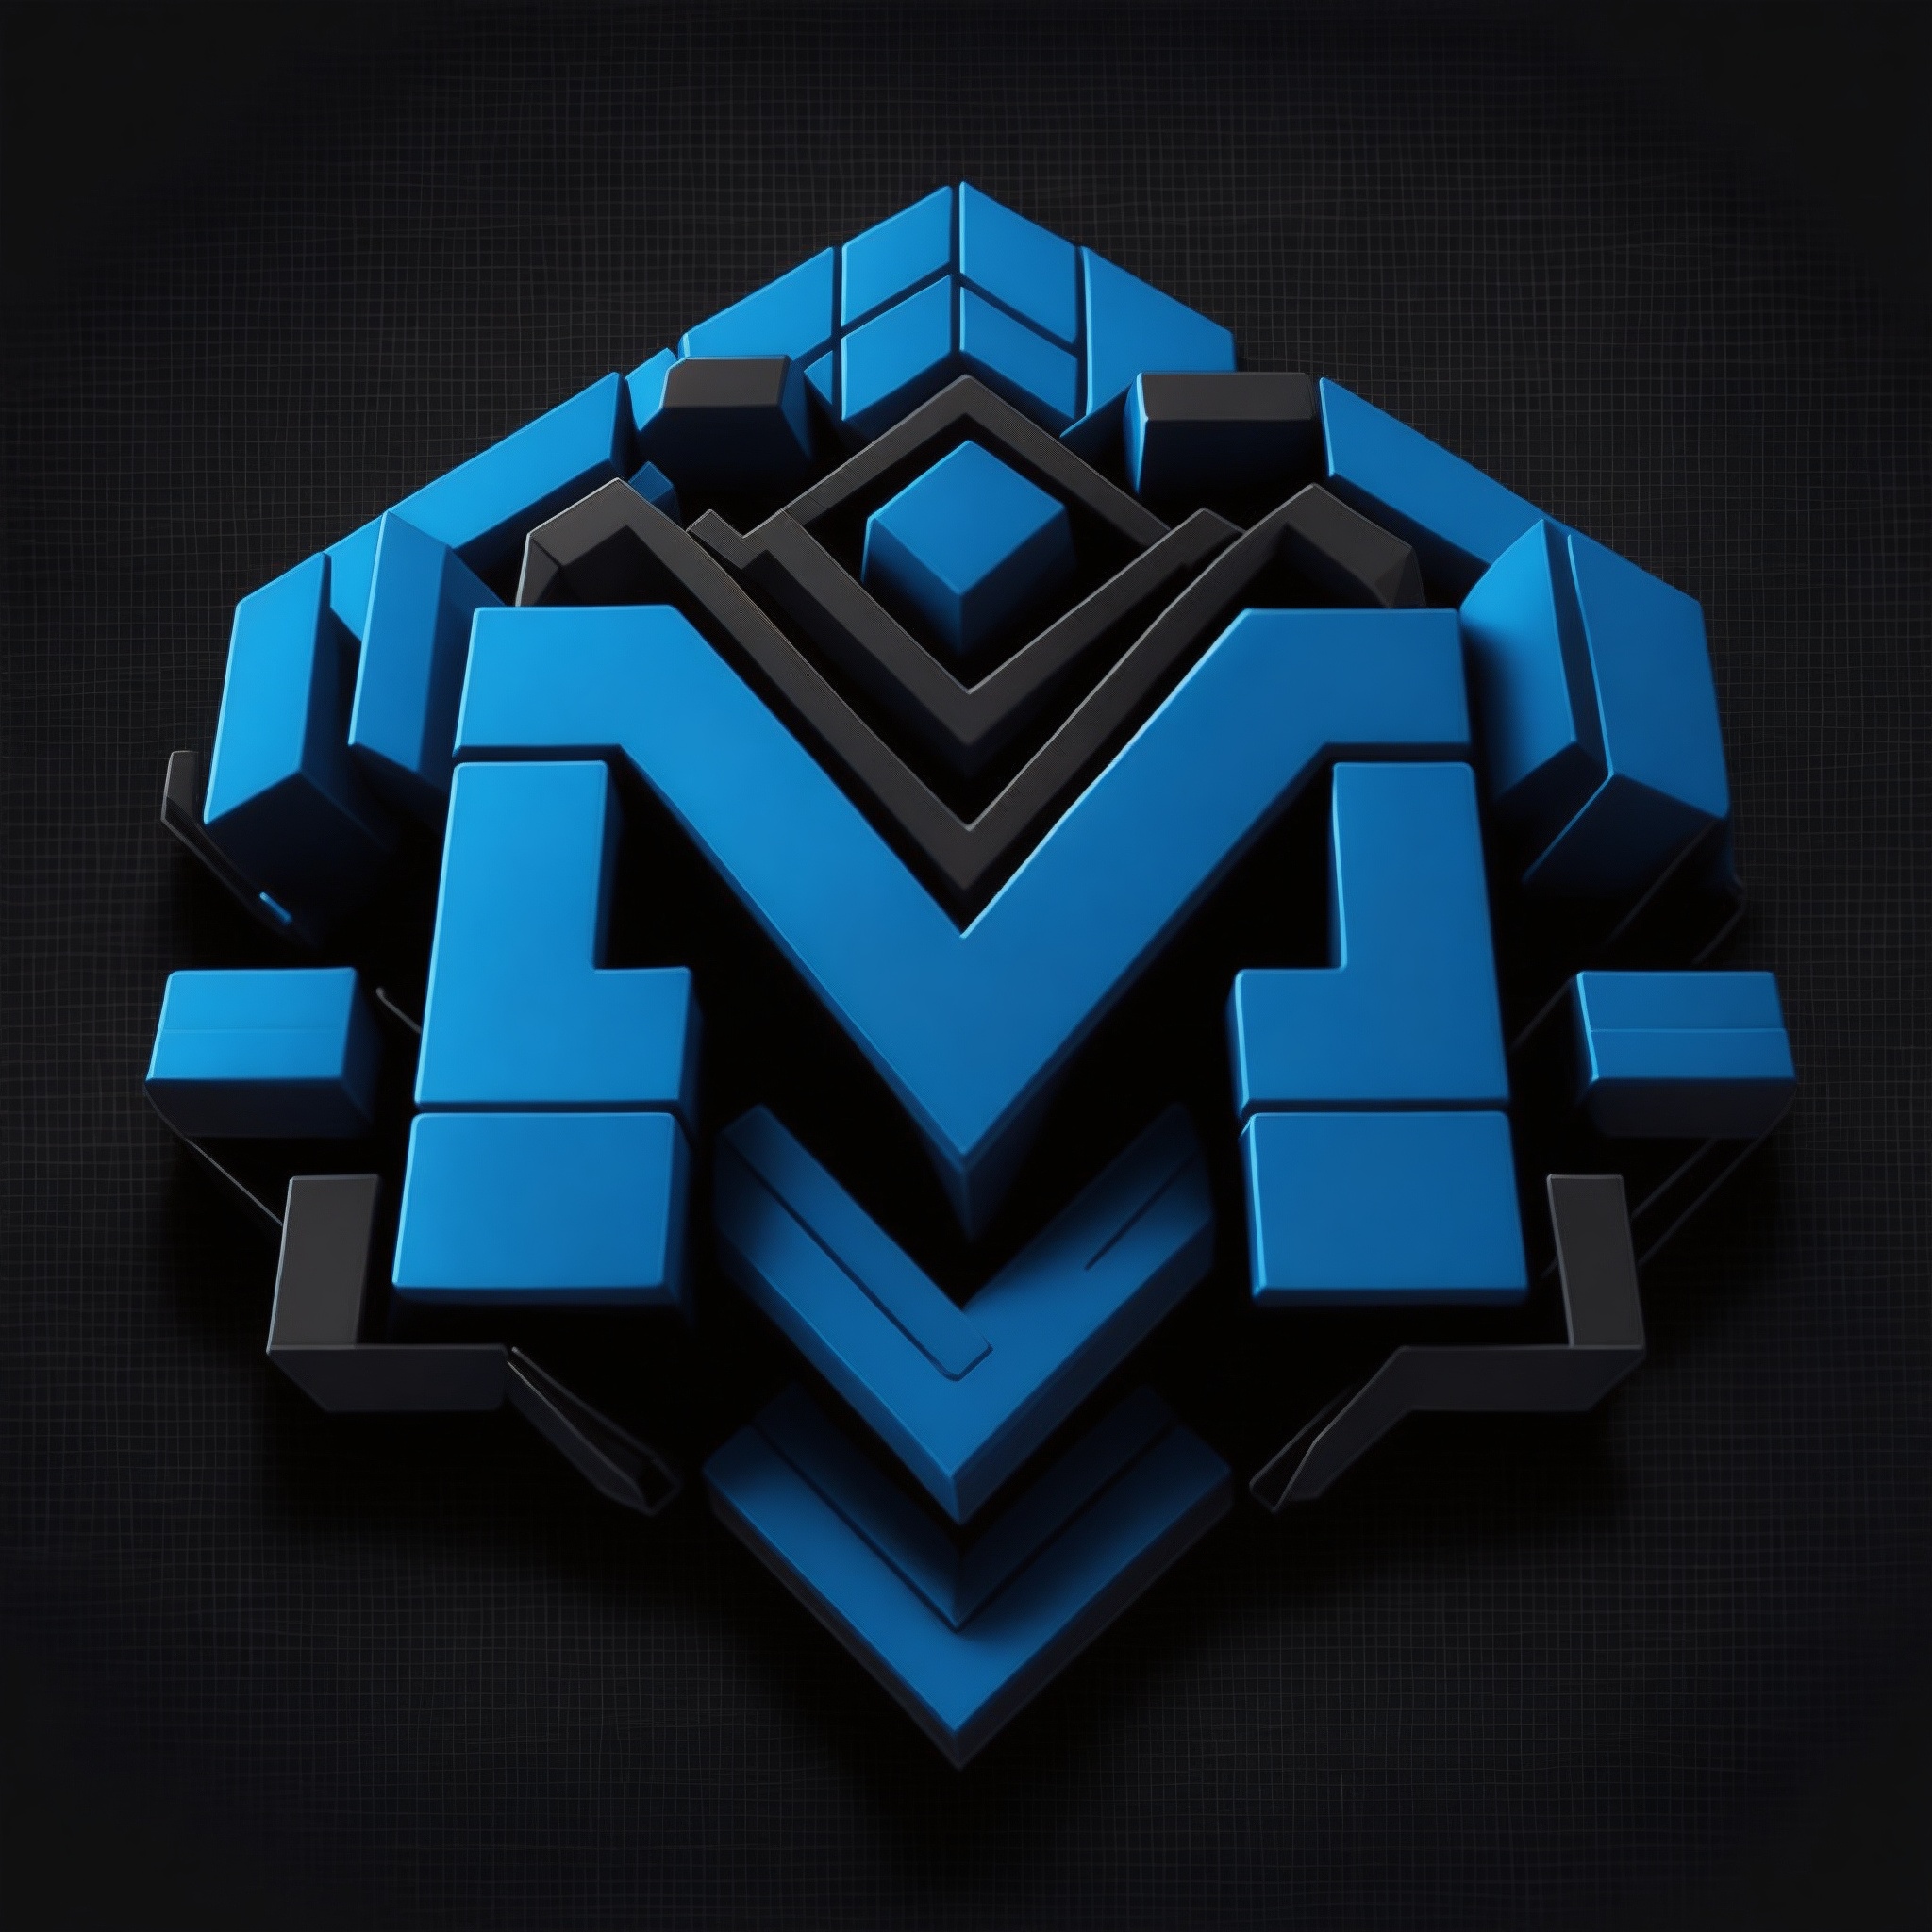 Default_MSShop_logo_blue_and_black_background_Minecraft_0_02806ca3-01eb-4d69-9436-772ab67e213a_1yyliICj